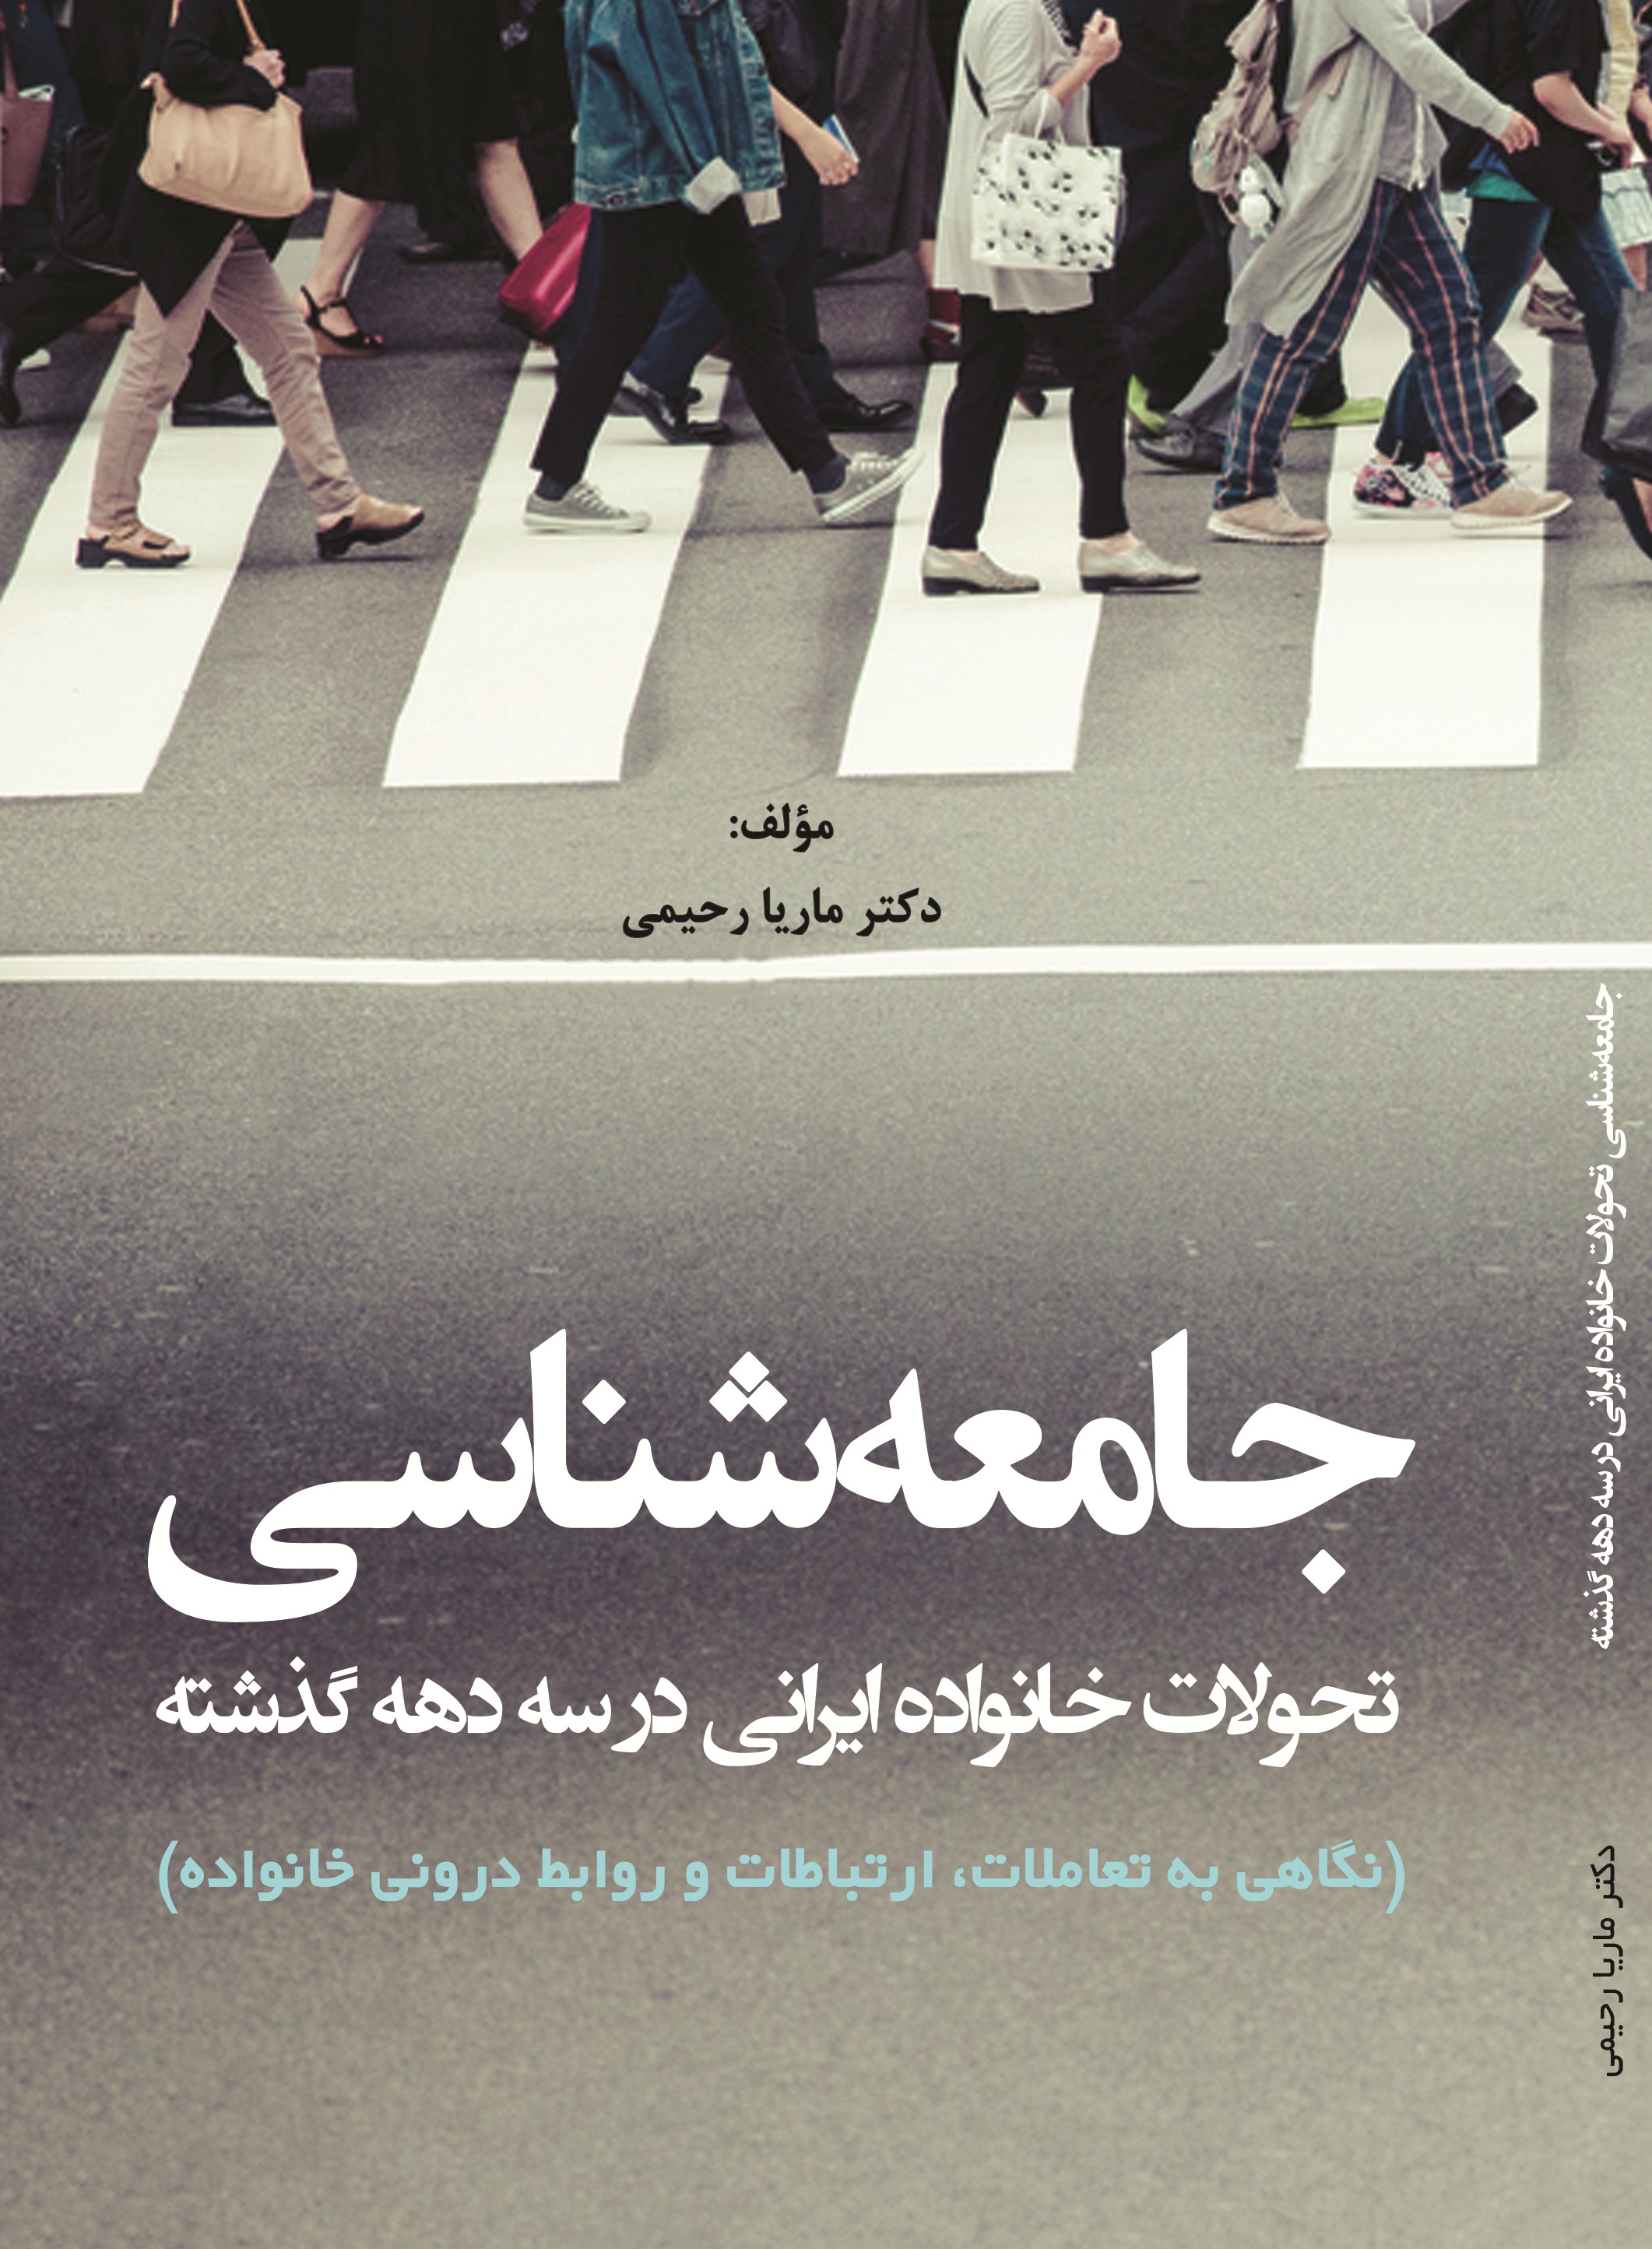 جامعه شناسی تحولات خانواده ایرانی در سه دهه گذشته (نگاهی به تعاملات، ارتباطات و روابط درونی خانواده )